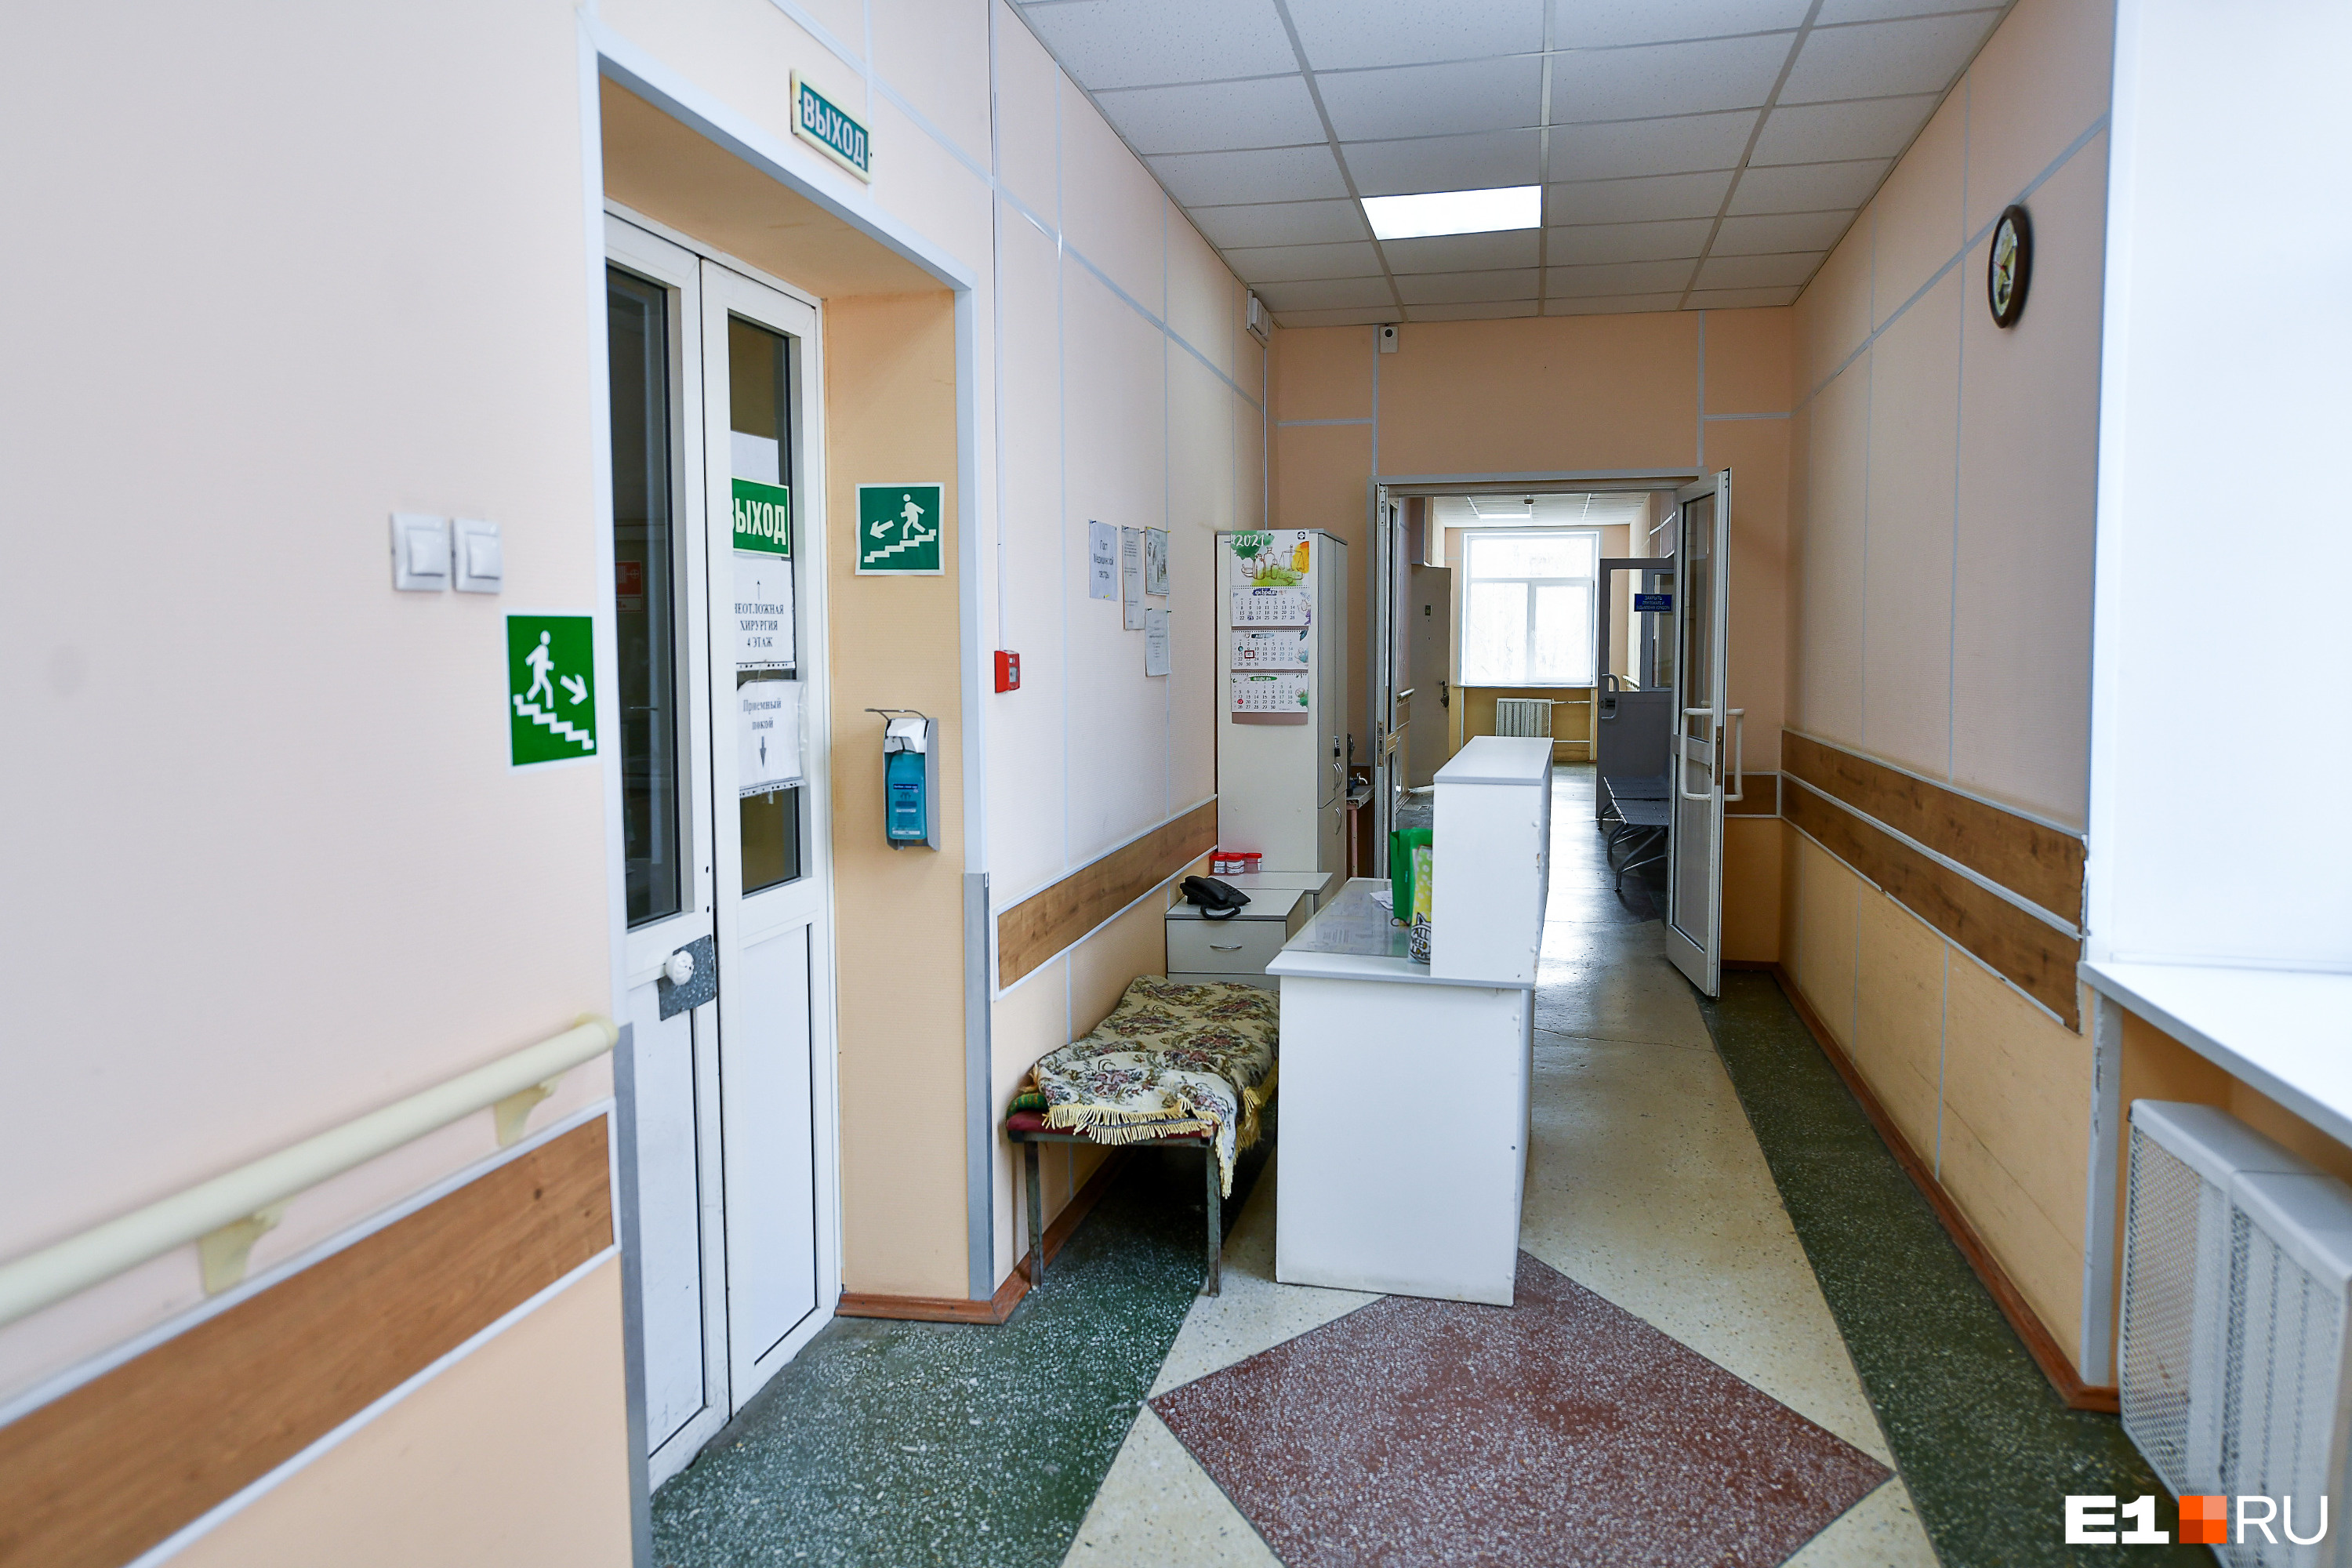 «Мама сгнивает». Дочь пациентки пожаловалась на ужасные условия в больнице Екатеринбурга: видео